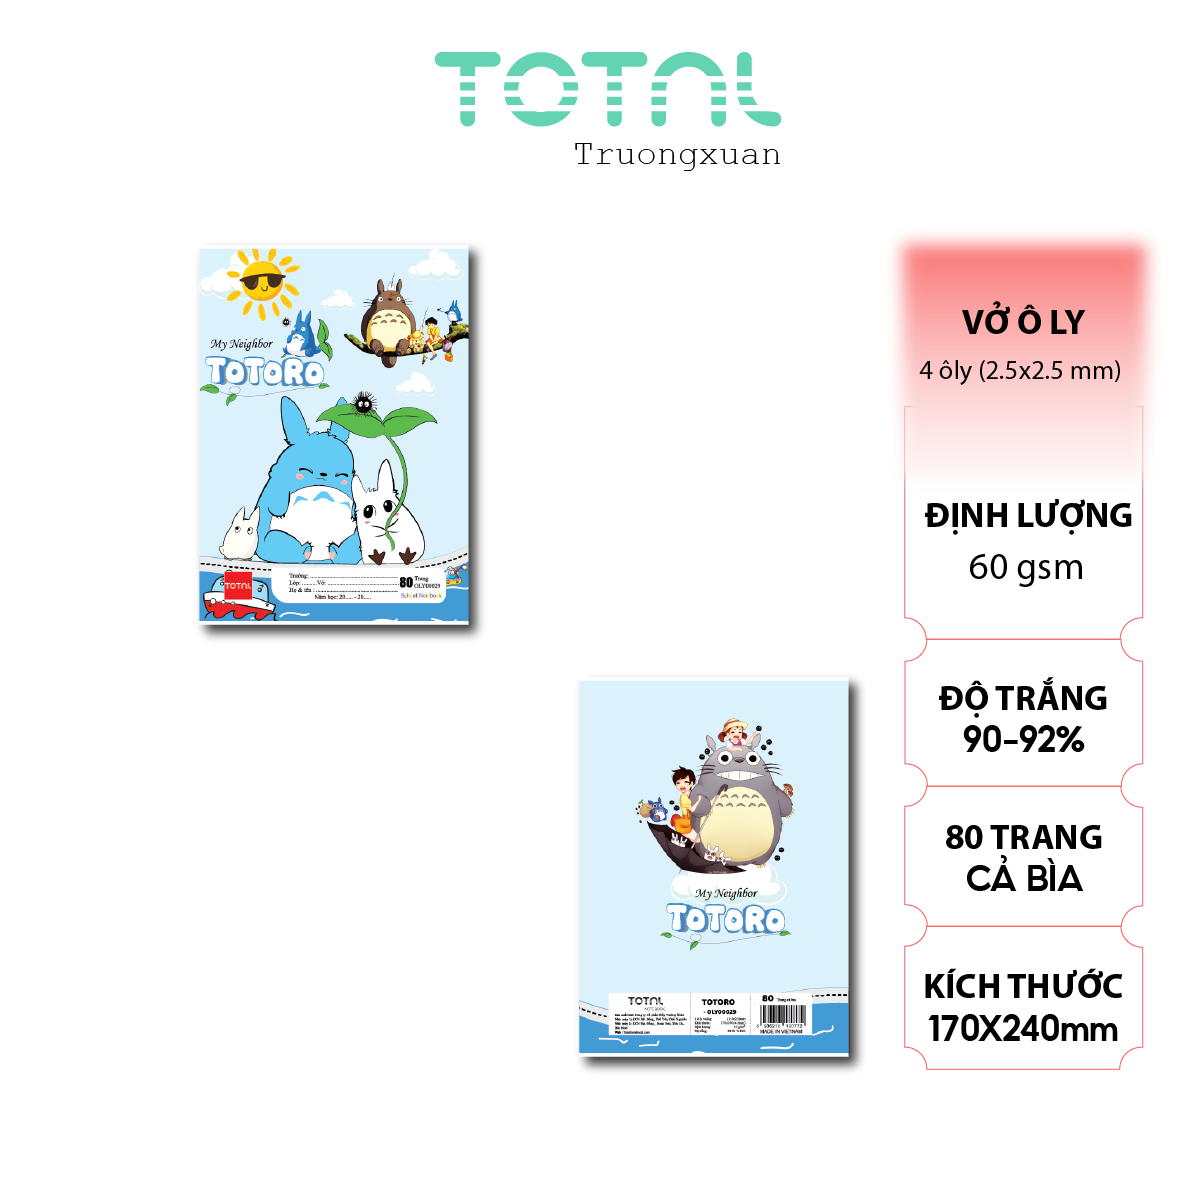 Vở oly Total Totoro 80 trang 4 ôly